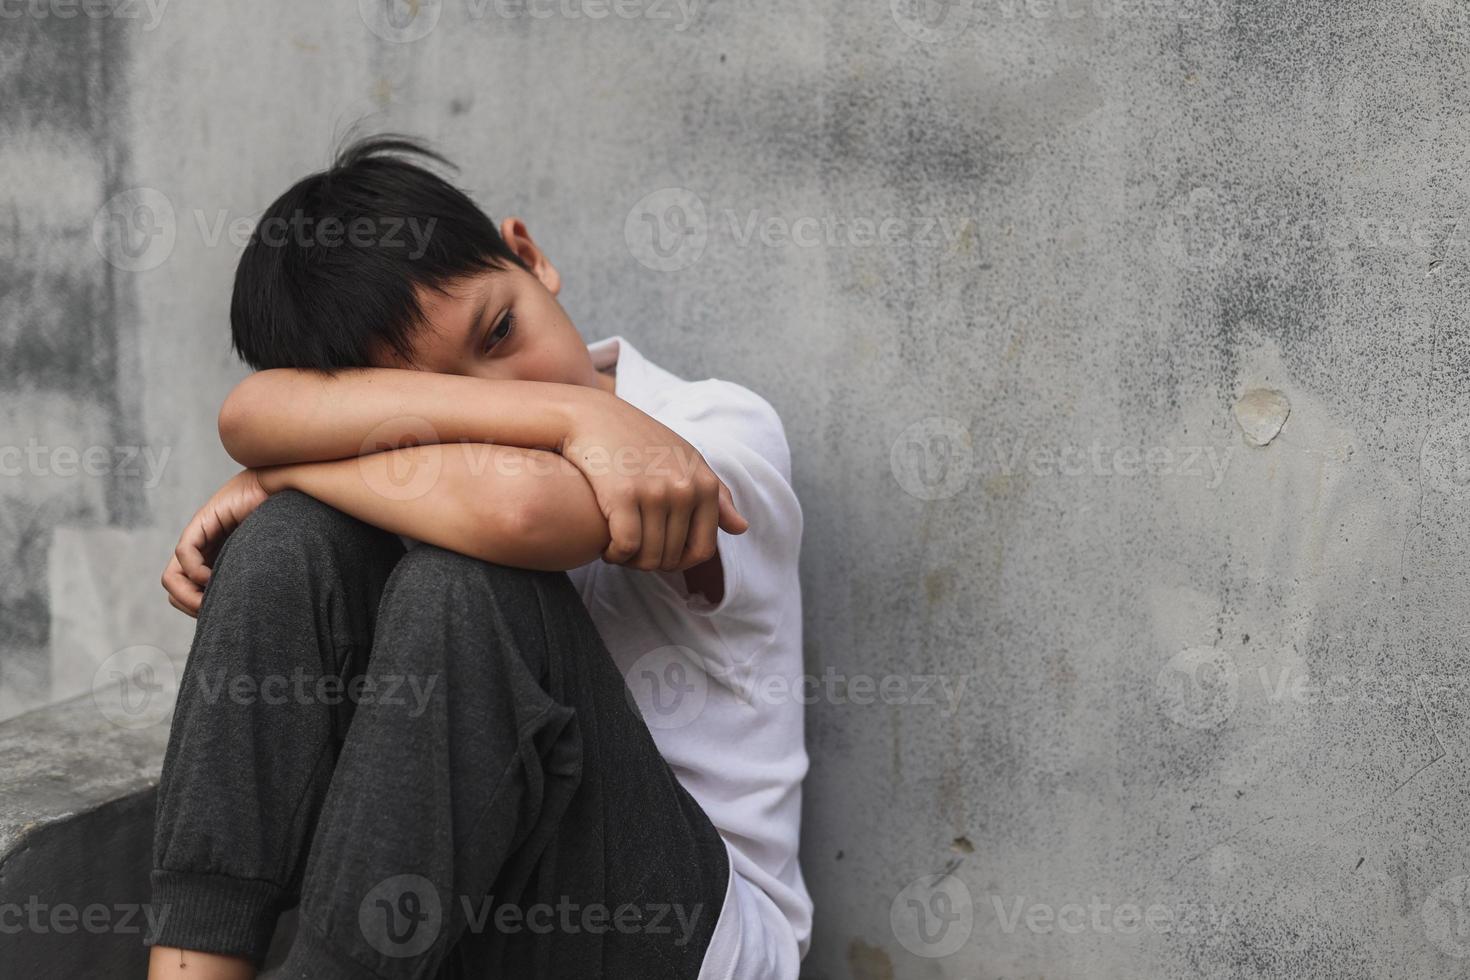 pojke som sitter ensam efter att ha utsatts för en handling av mobbning eller övergrepp foto